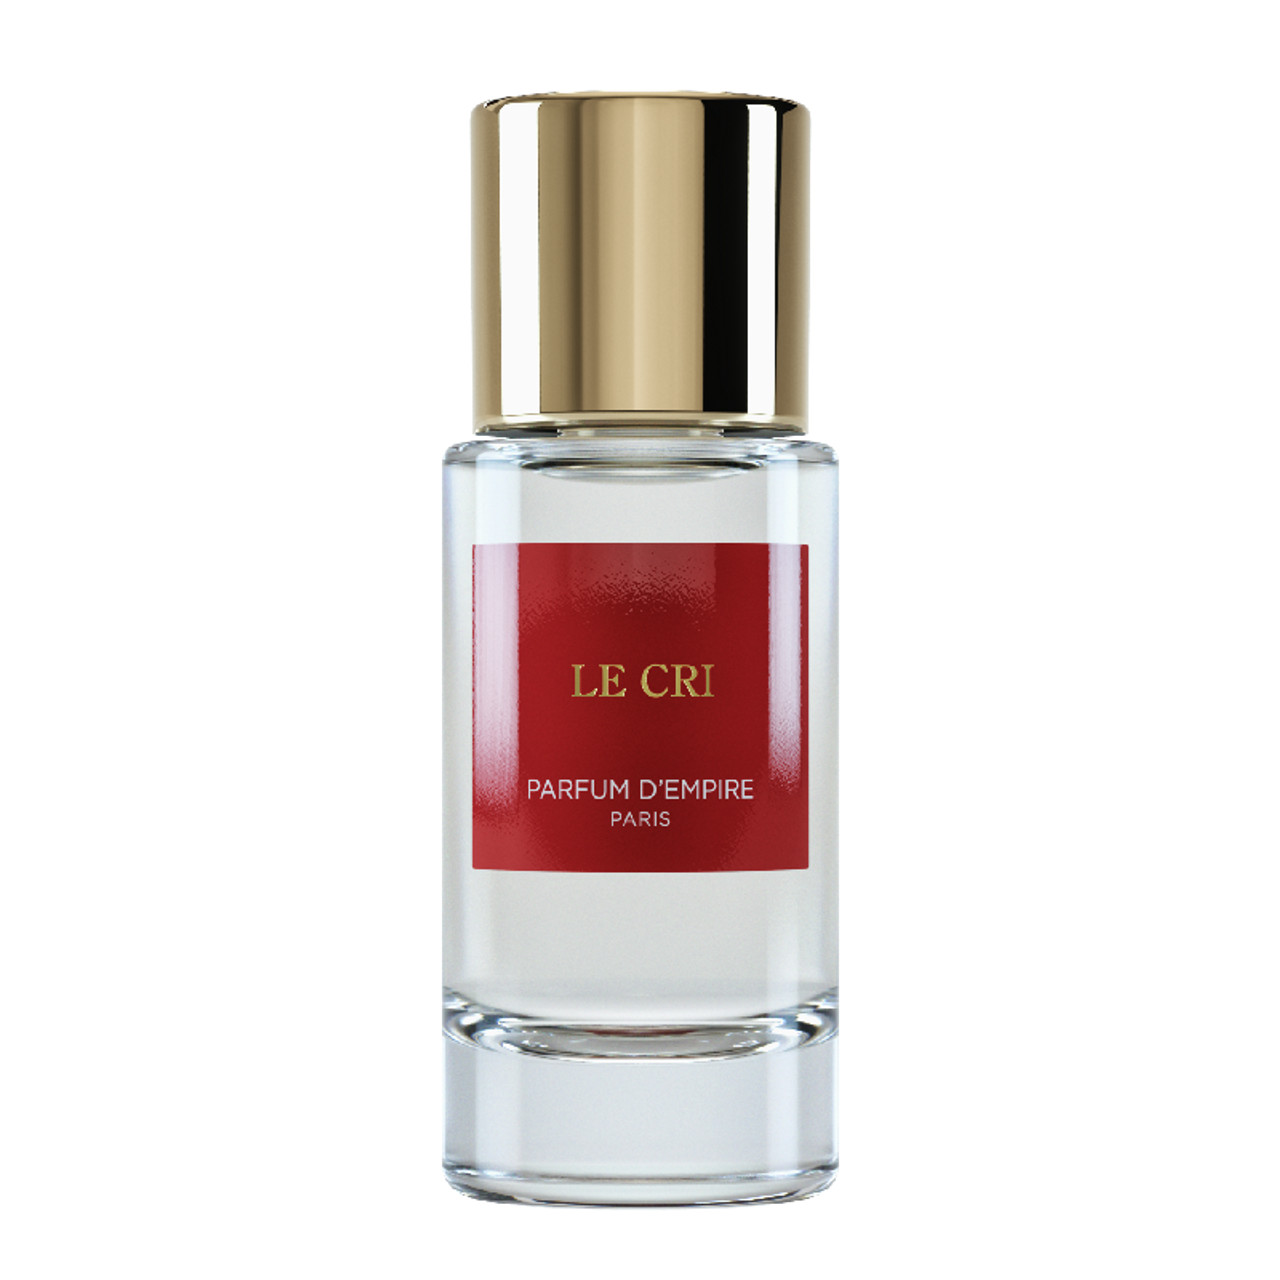 Le Cri eau de parfum spray 50ml by Parfum d'Empire.